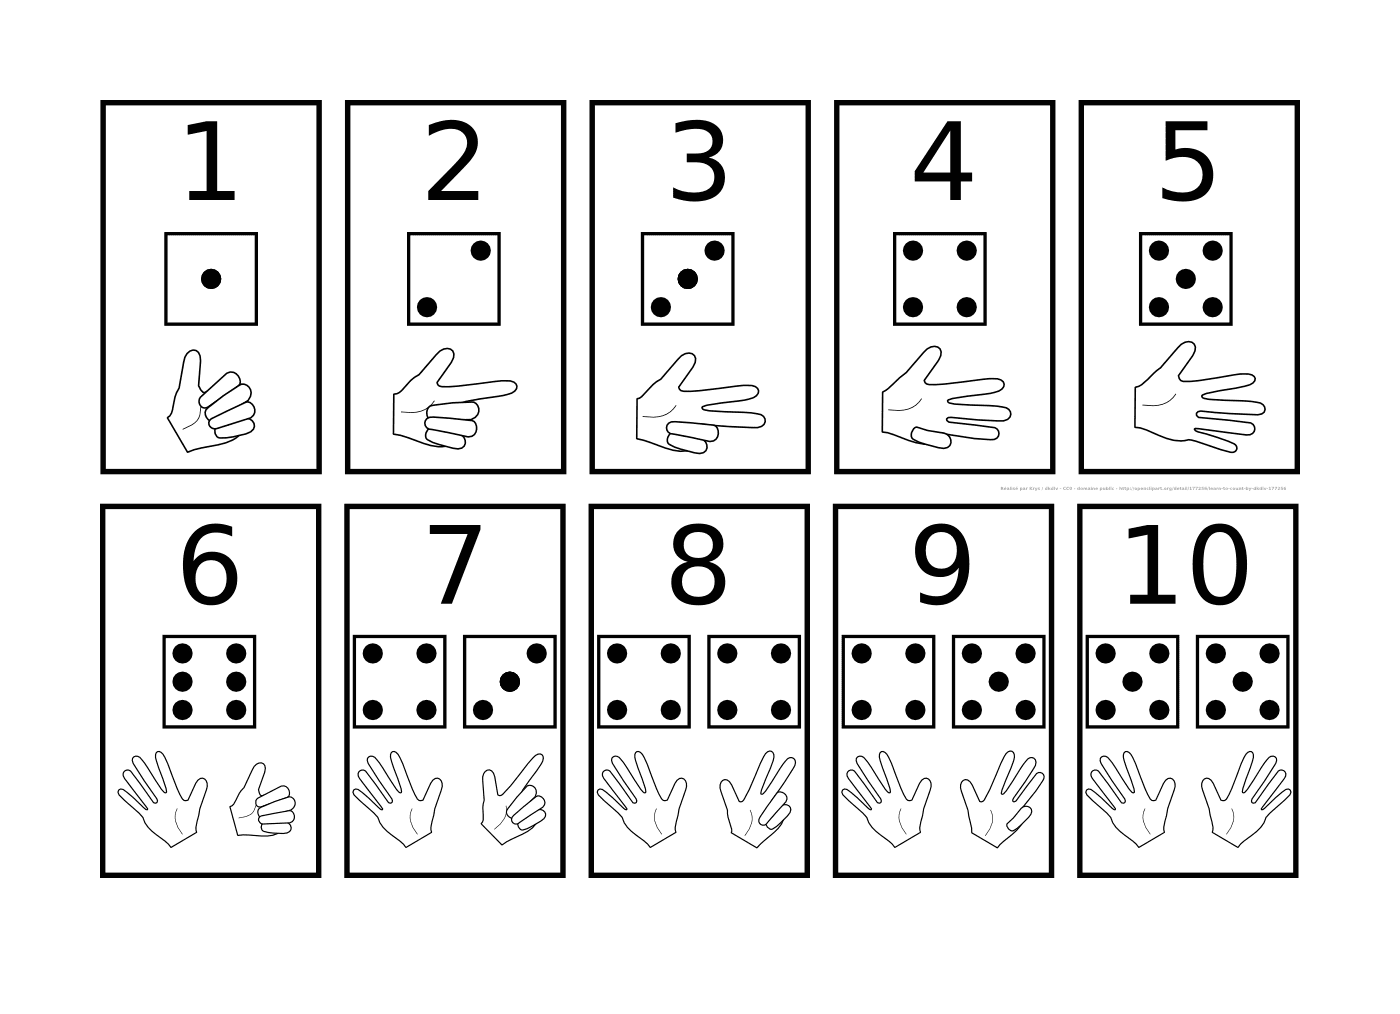  Cartão com números e símbolos 